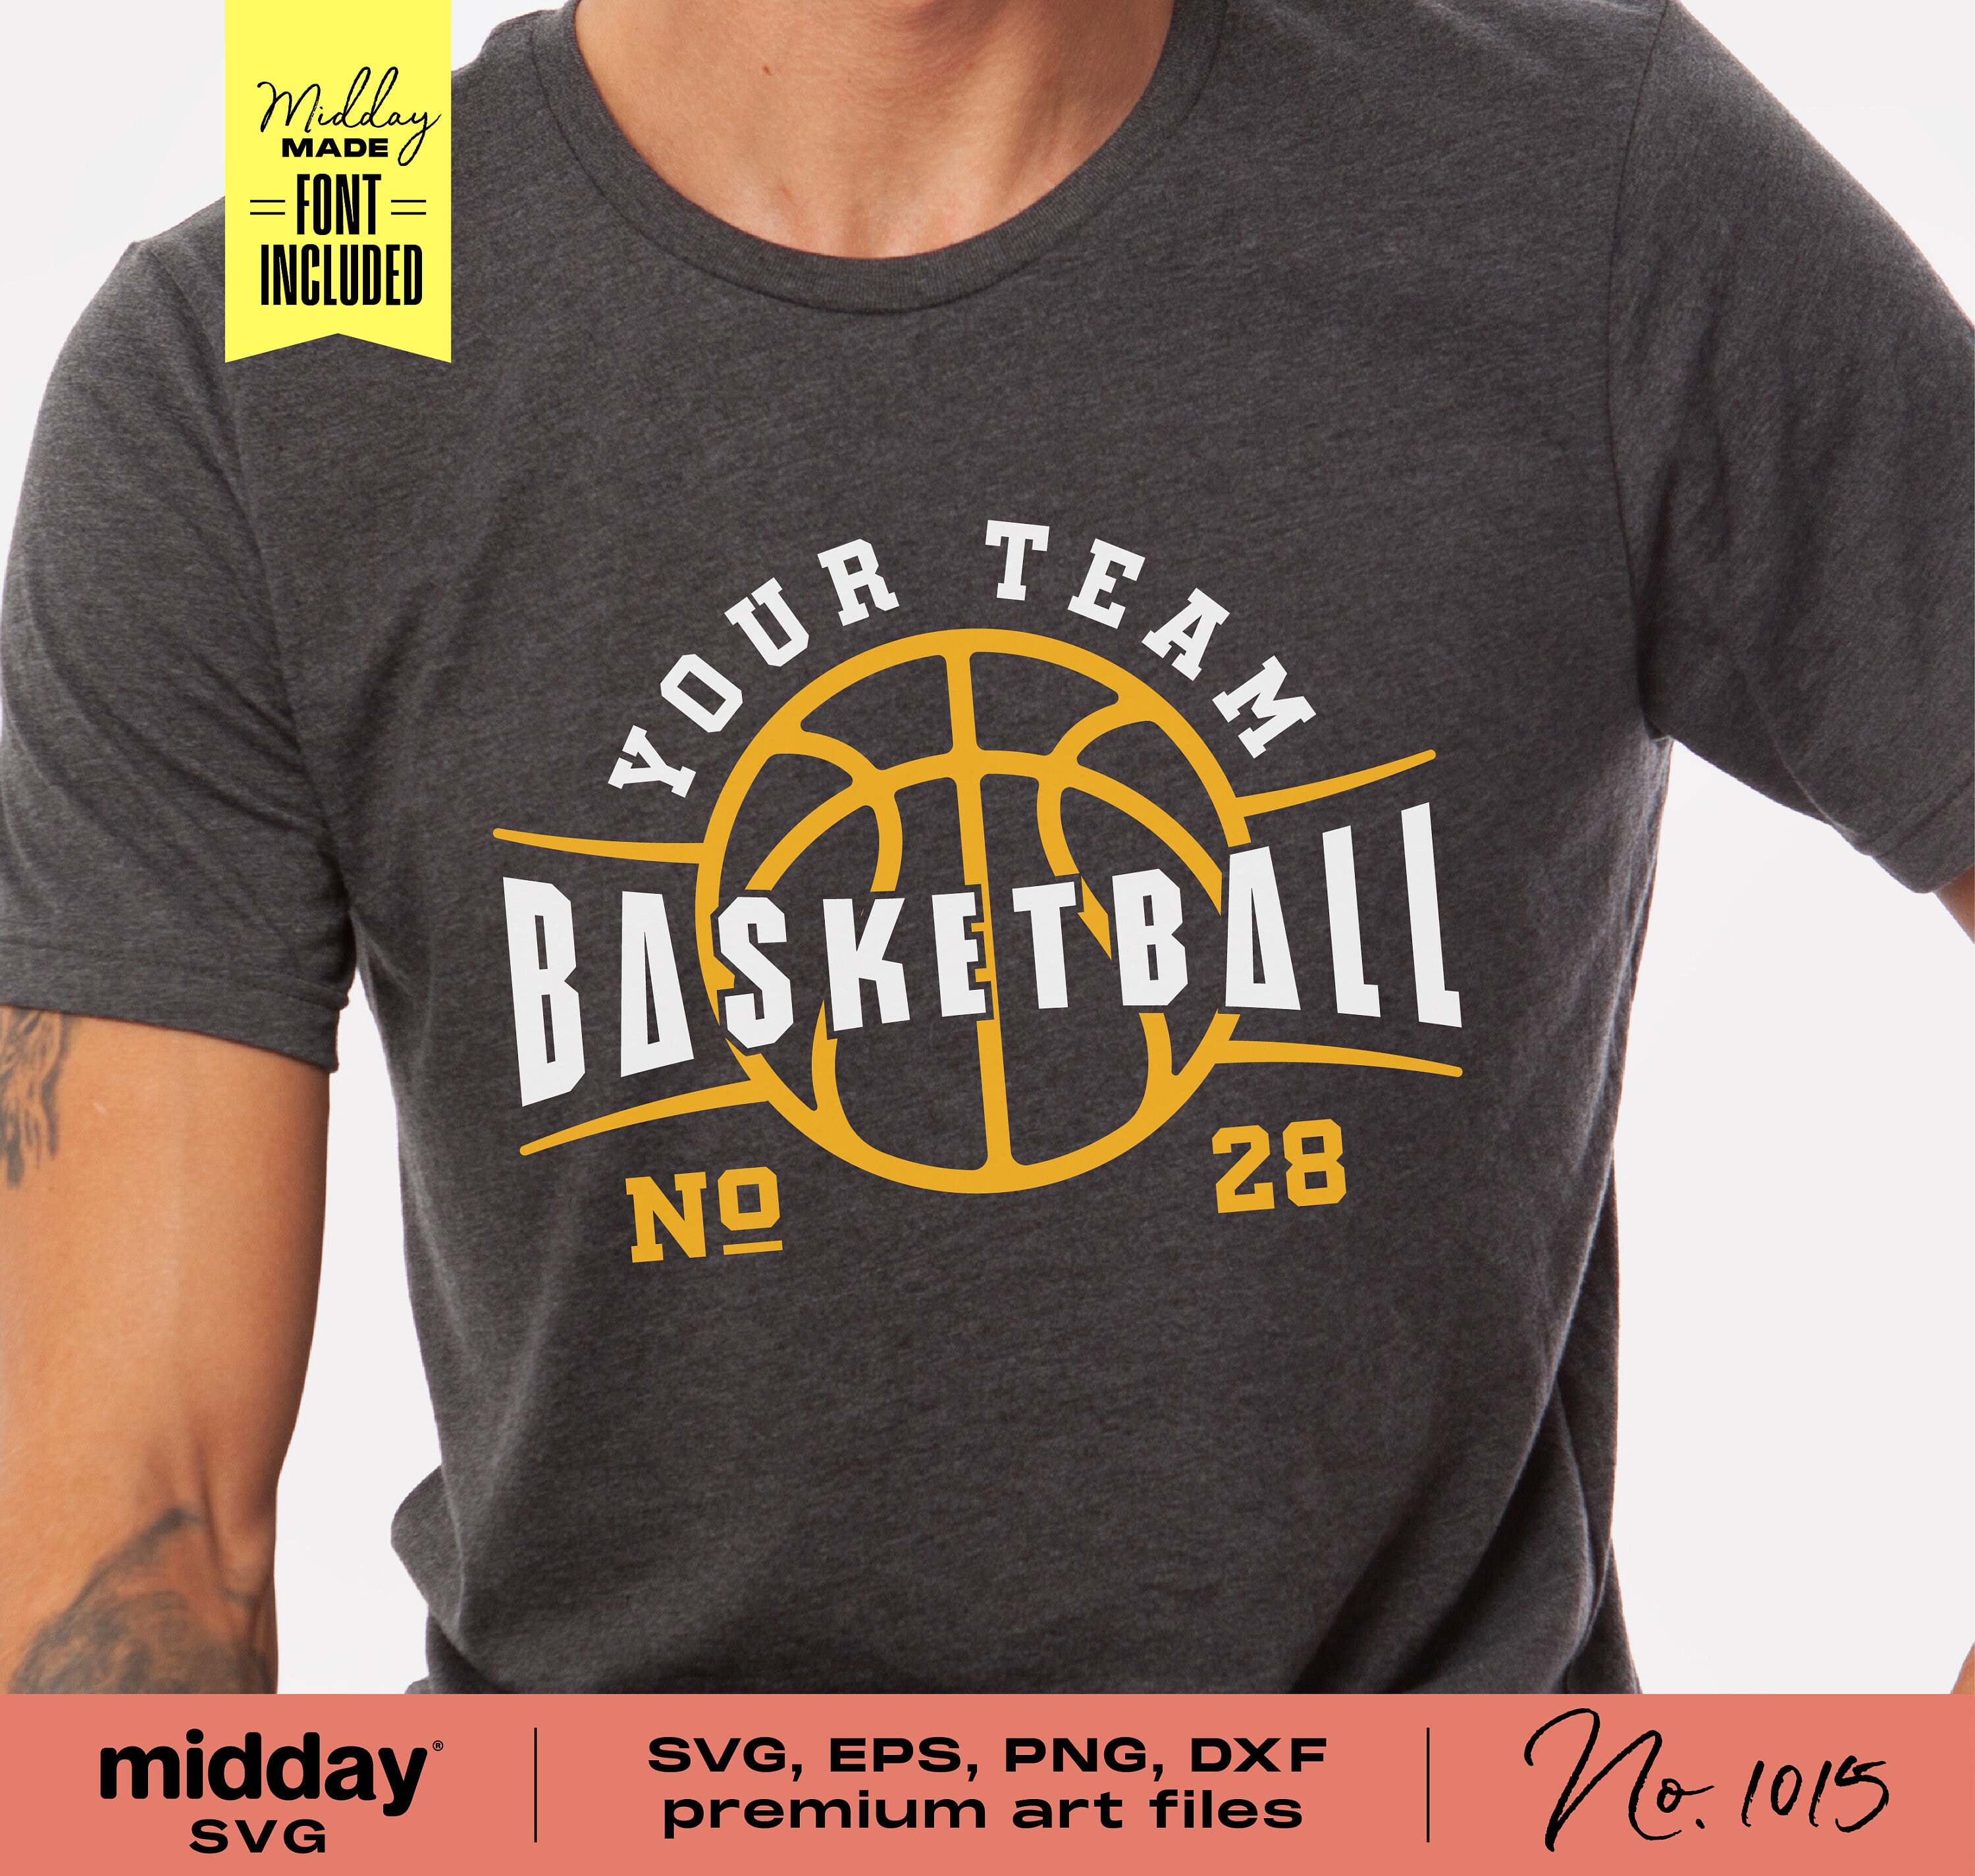 Basketball Emblem Label Print Tshirt Design Vector Illustration